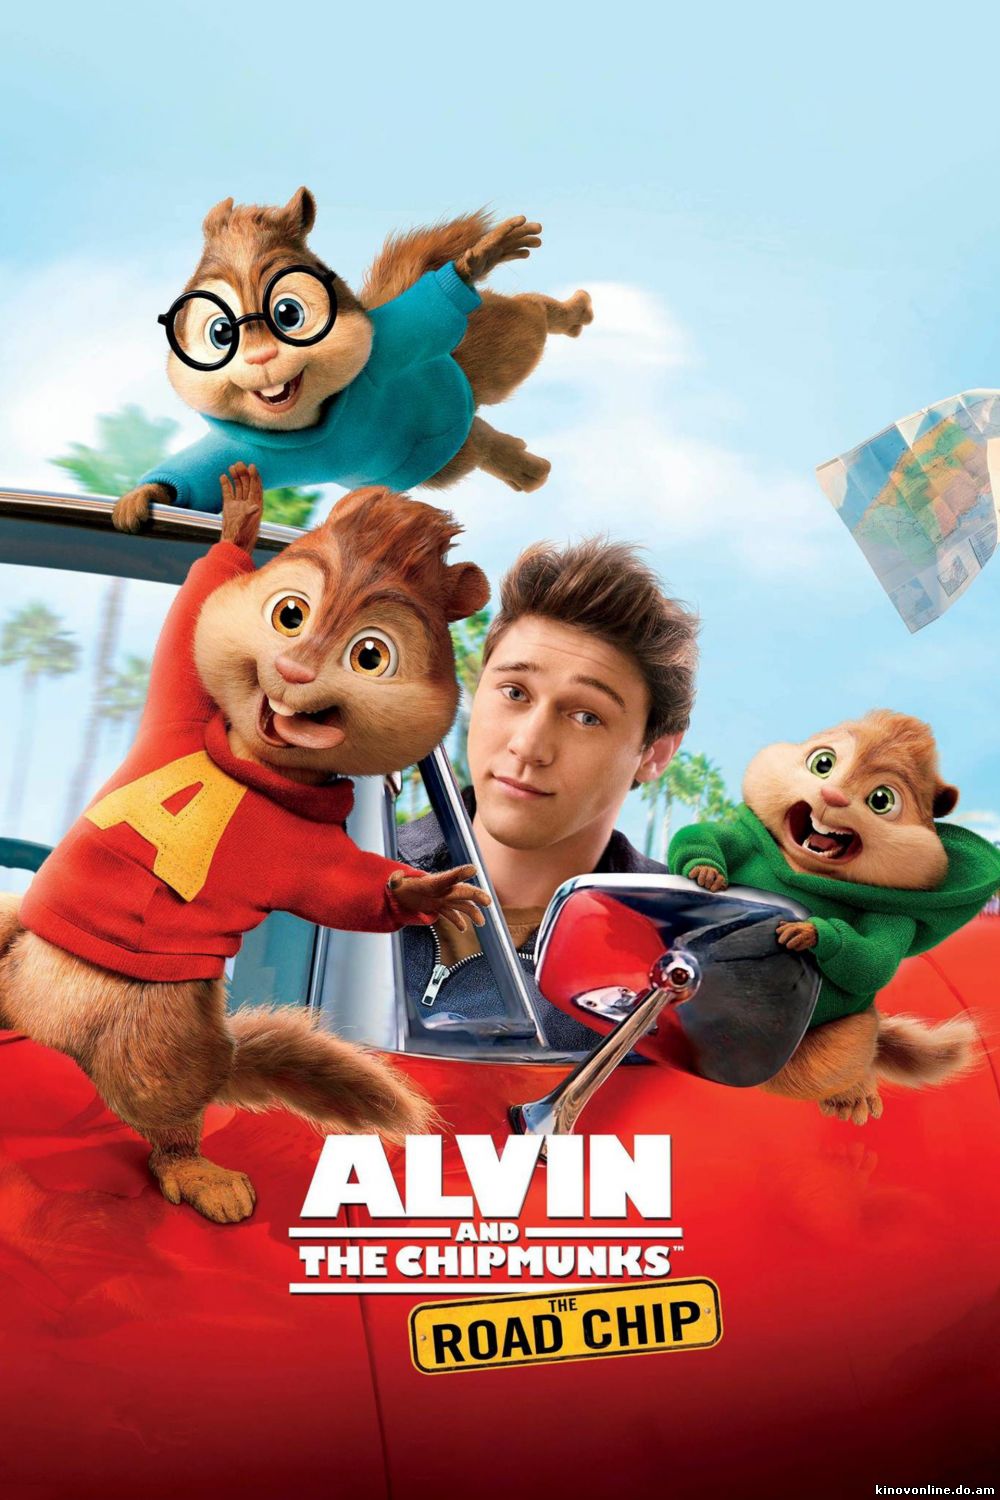 Элвин и бурундуки 4: Грандиозное бурундуключение - Alvin and the Chipmunks 4: The Road Chip (2015)